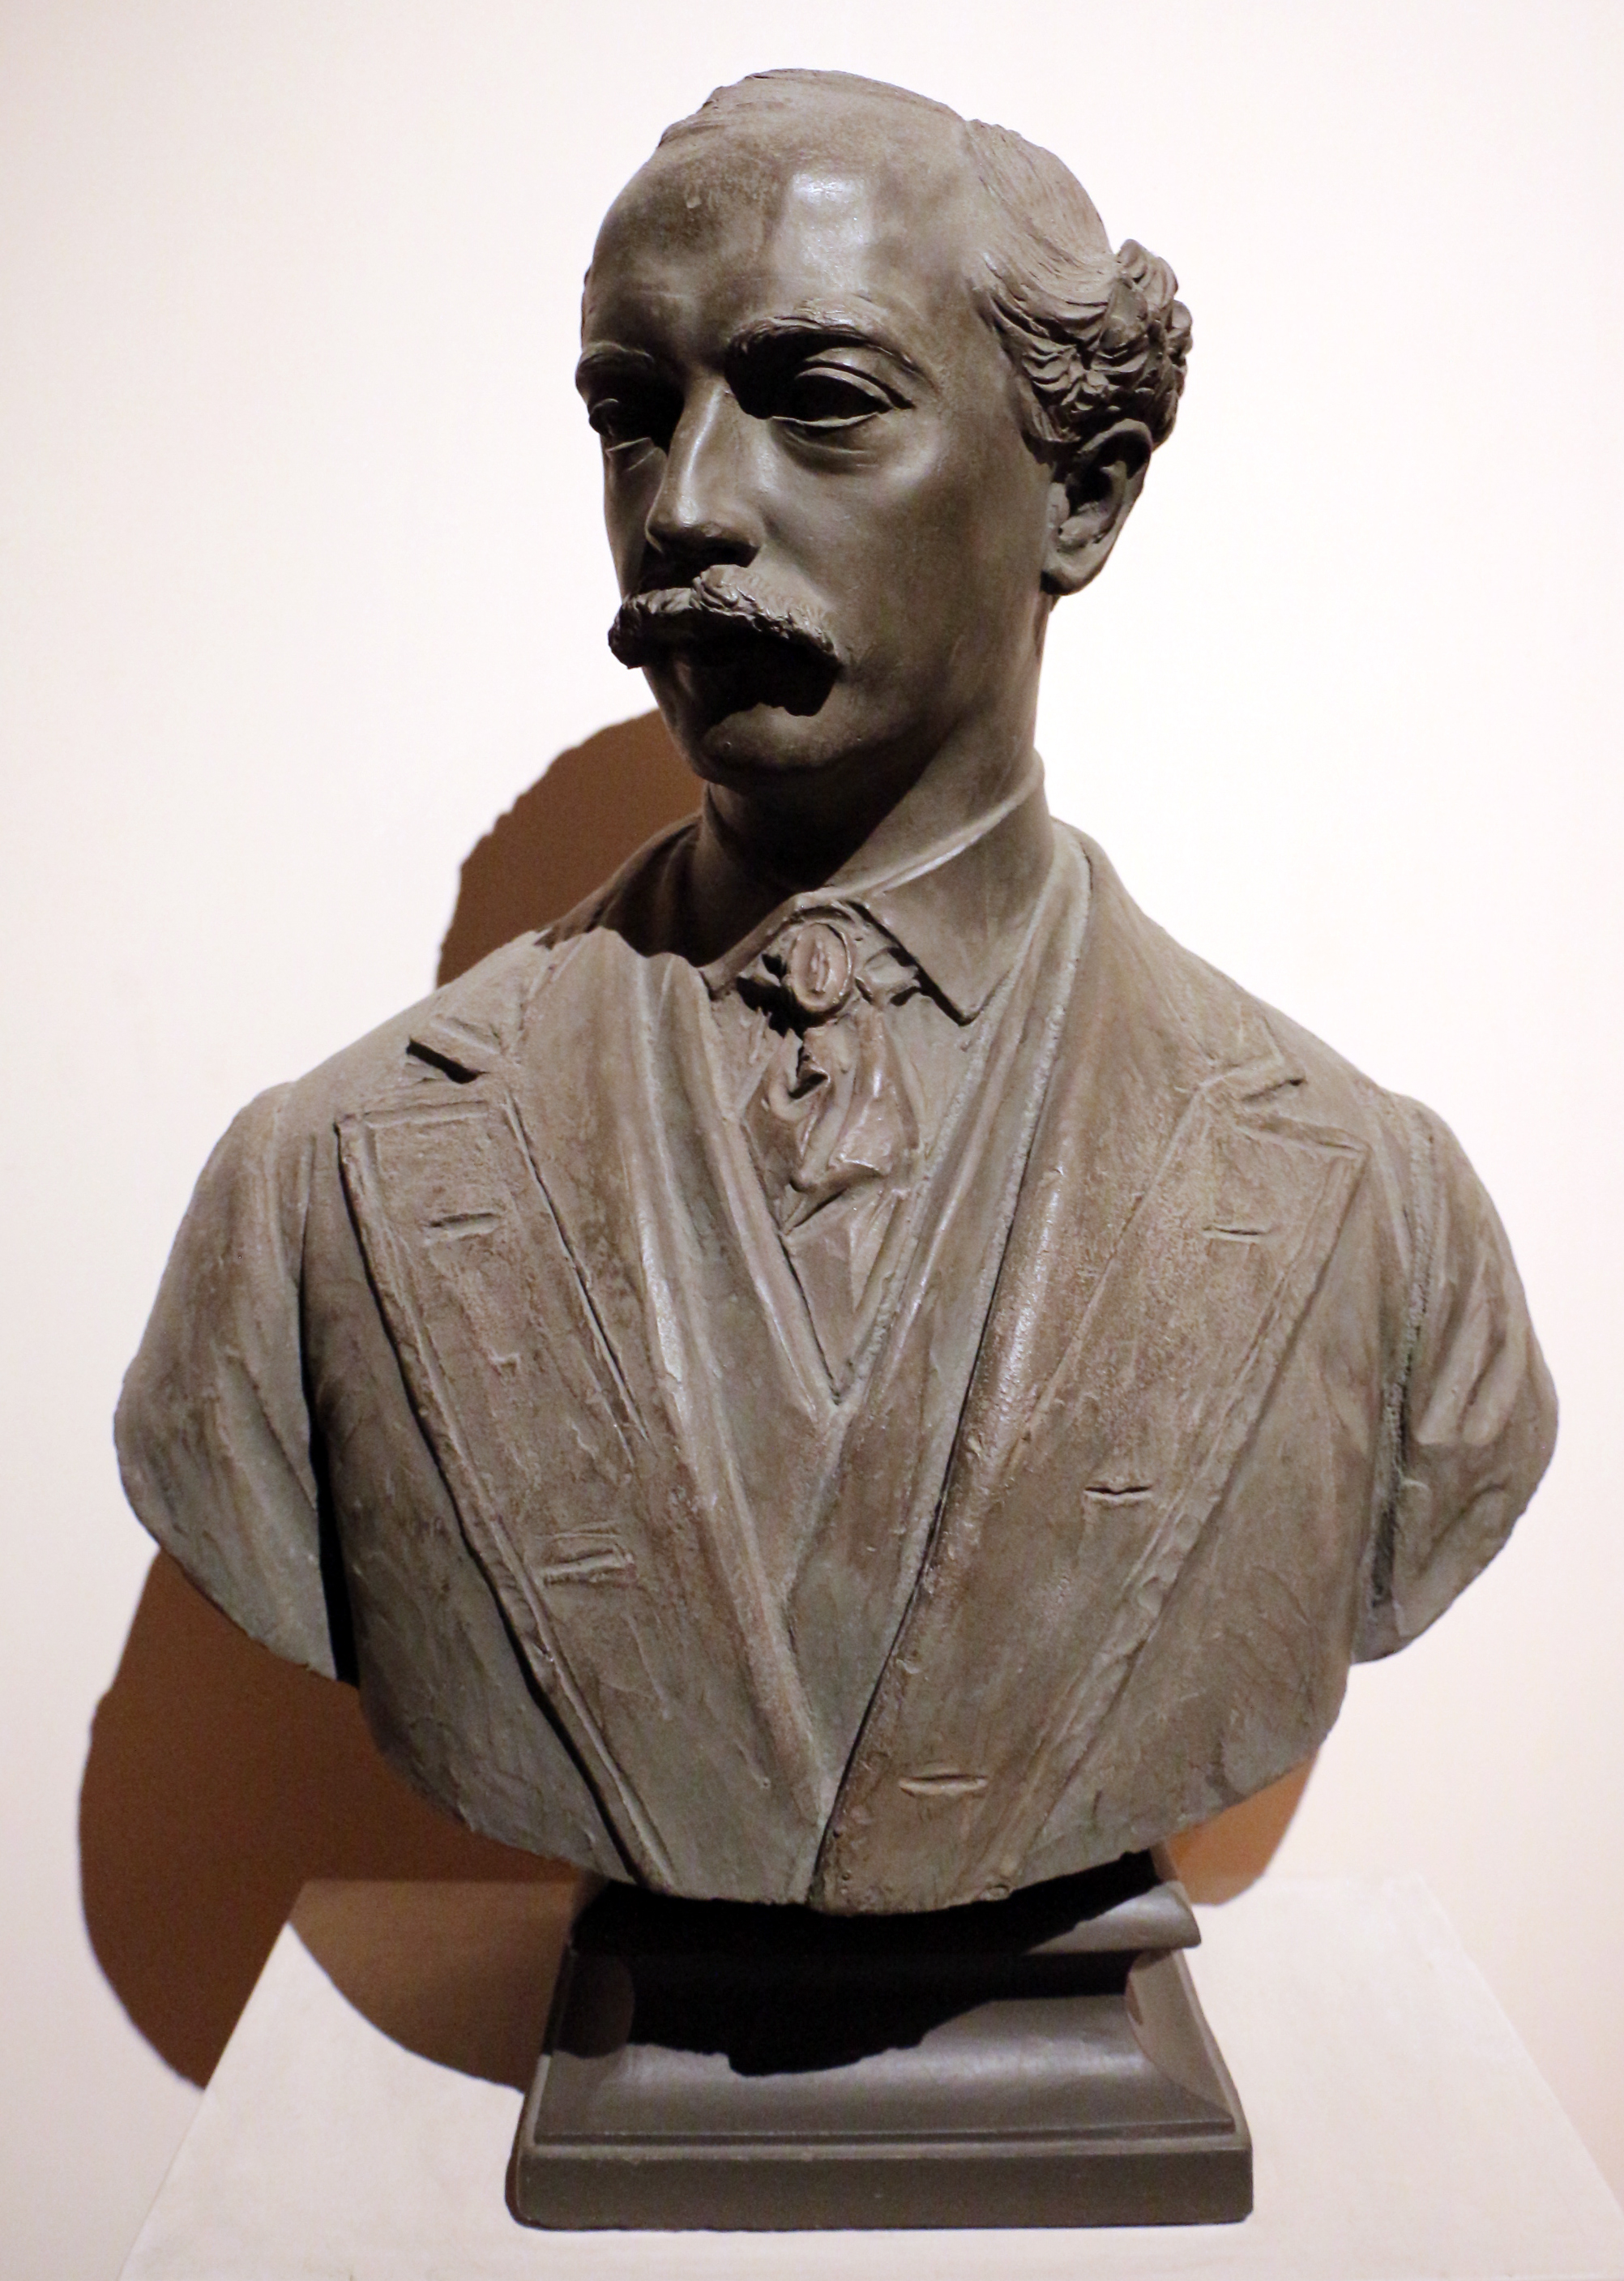 Luigi amici, busto dello scrittore mark twain, gesso coloratao, 1890 ca